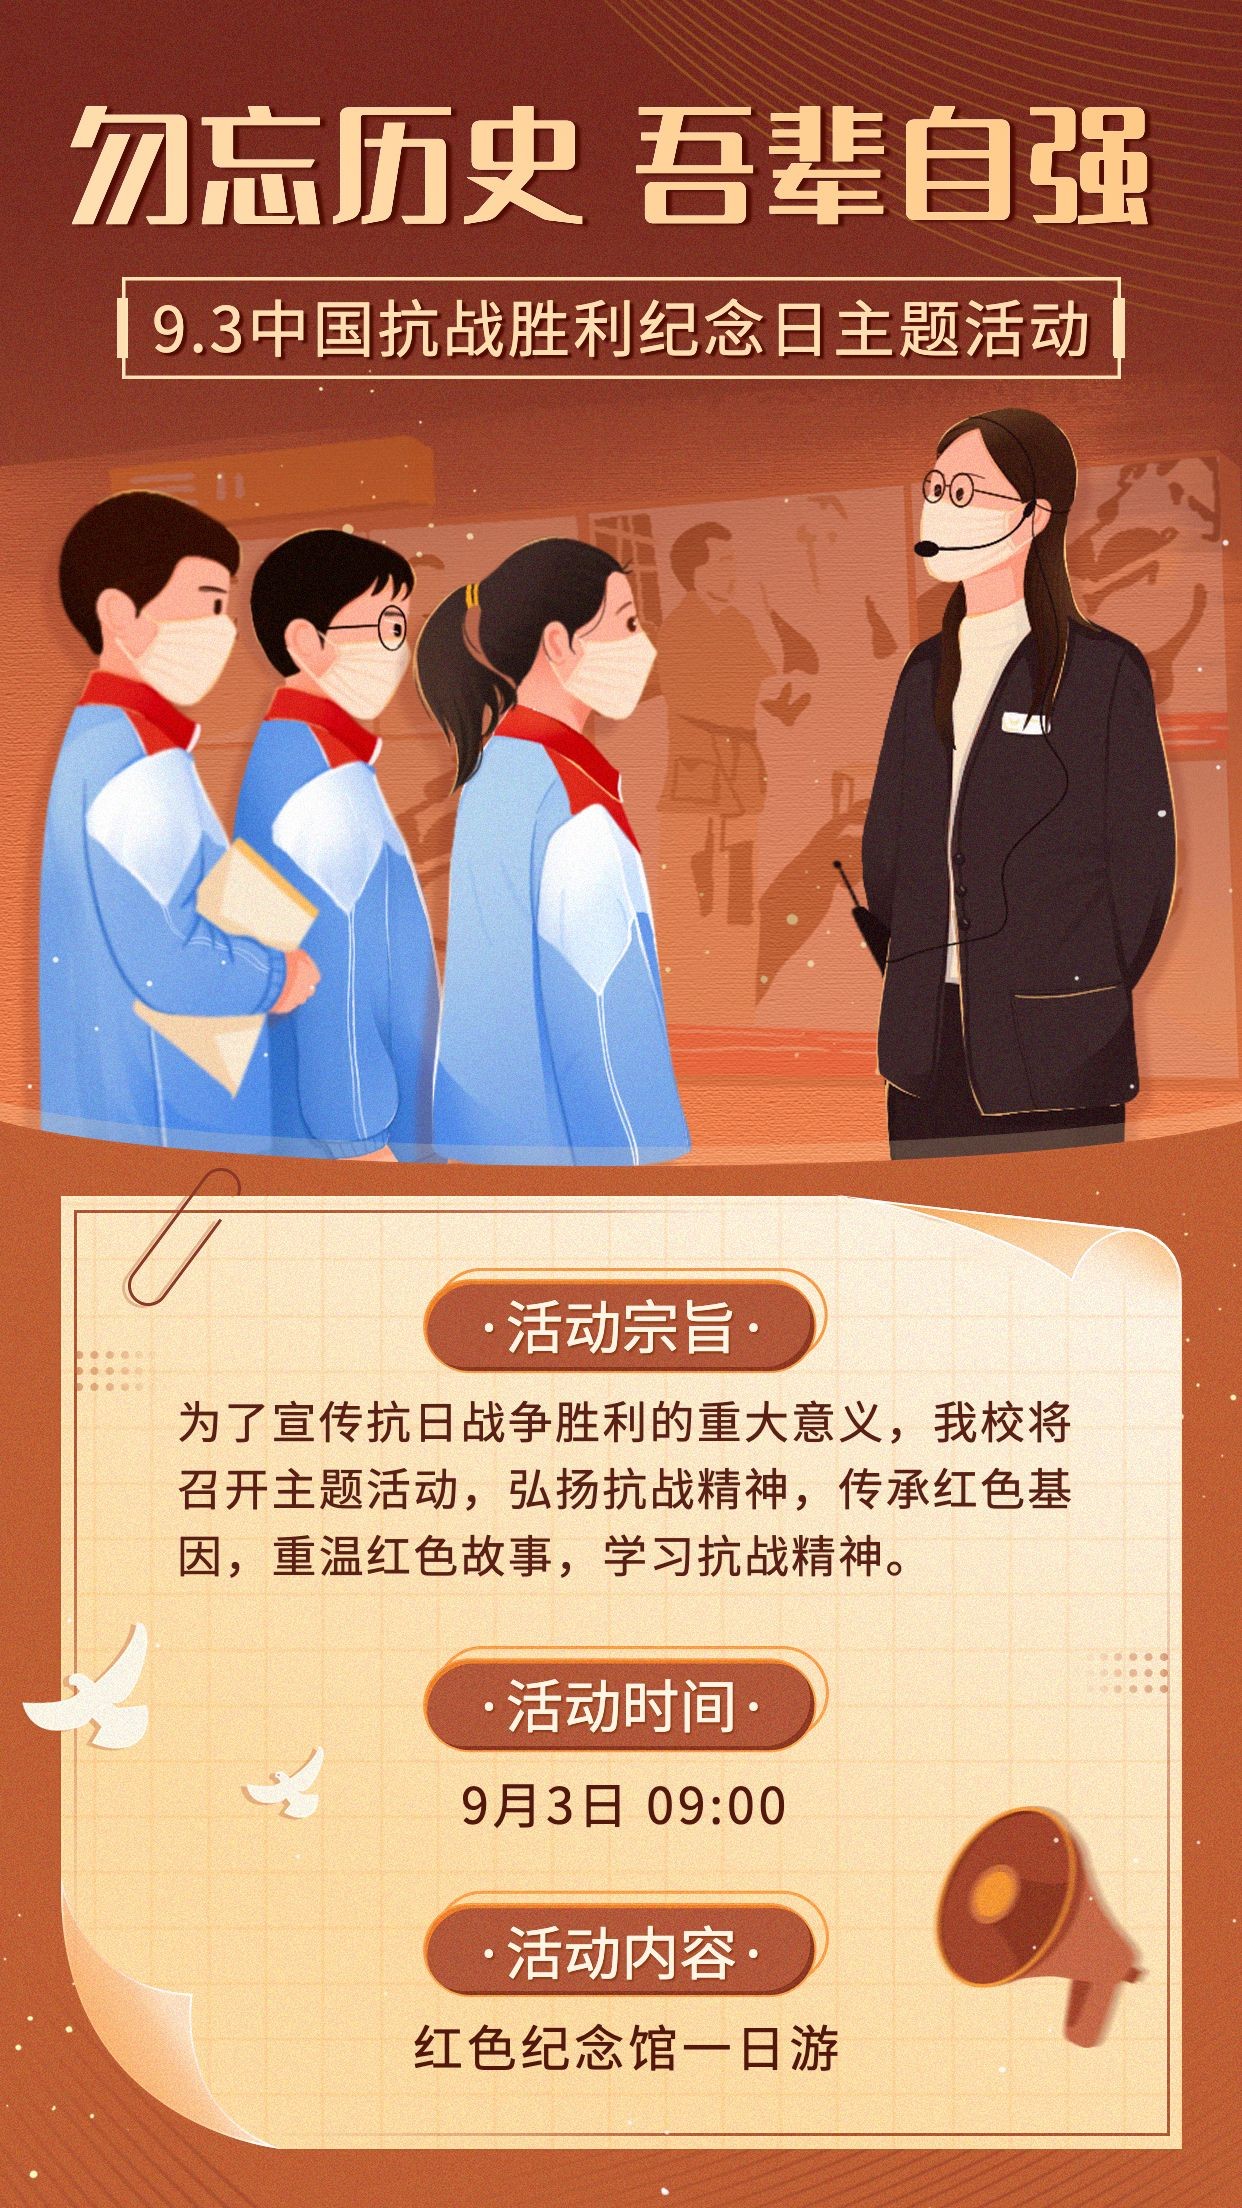 中国抗战胜利纪念日主题活动手绘手机海报